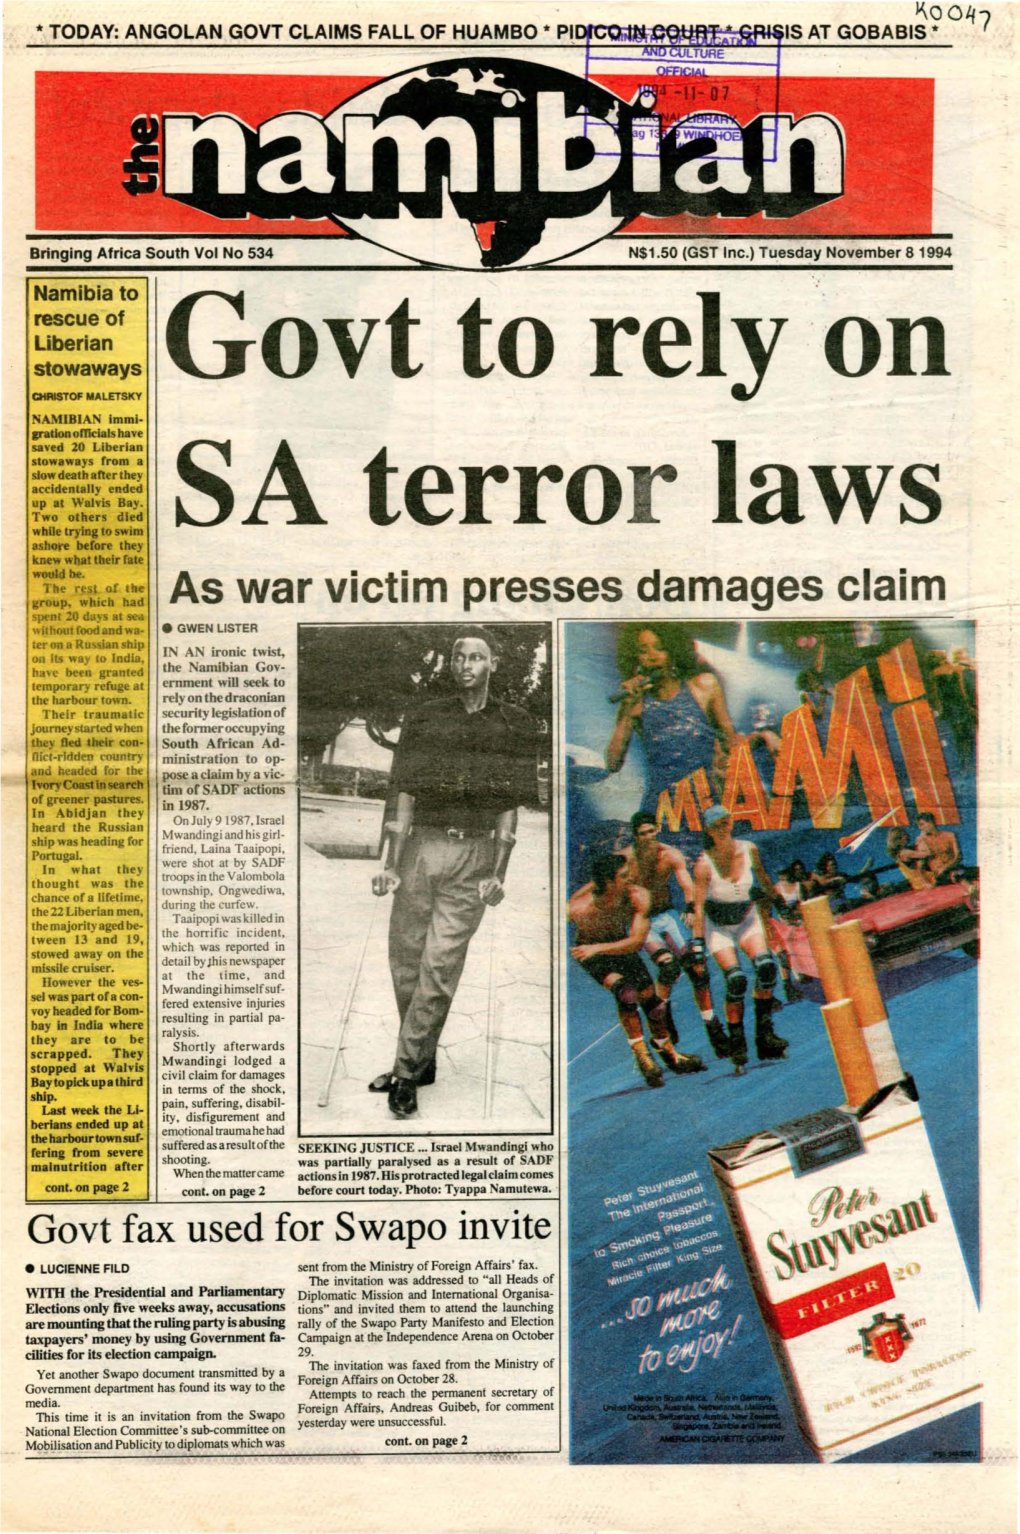 8 November 1994